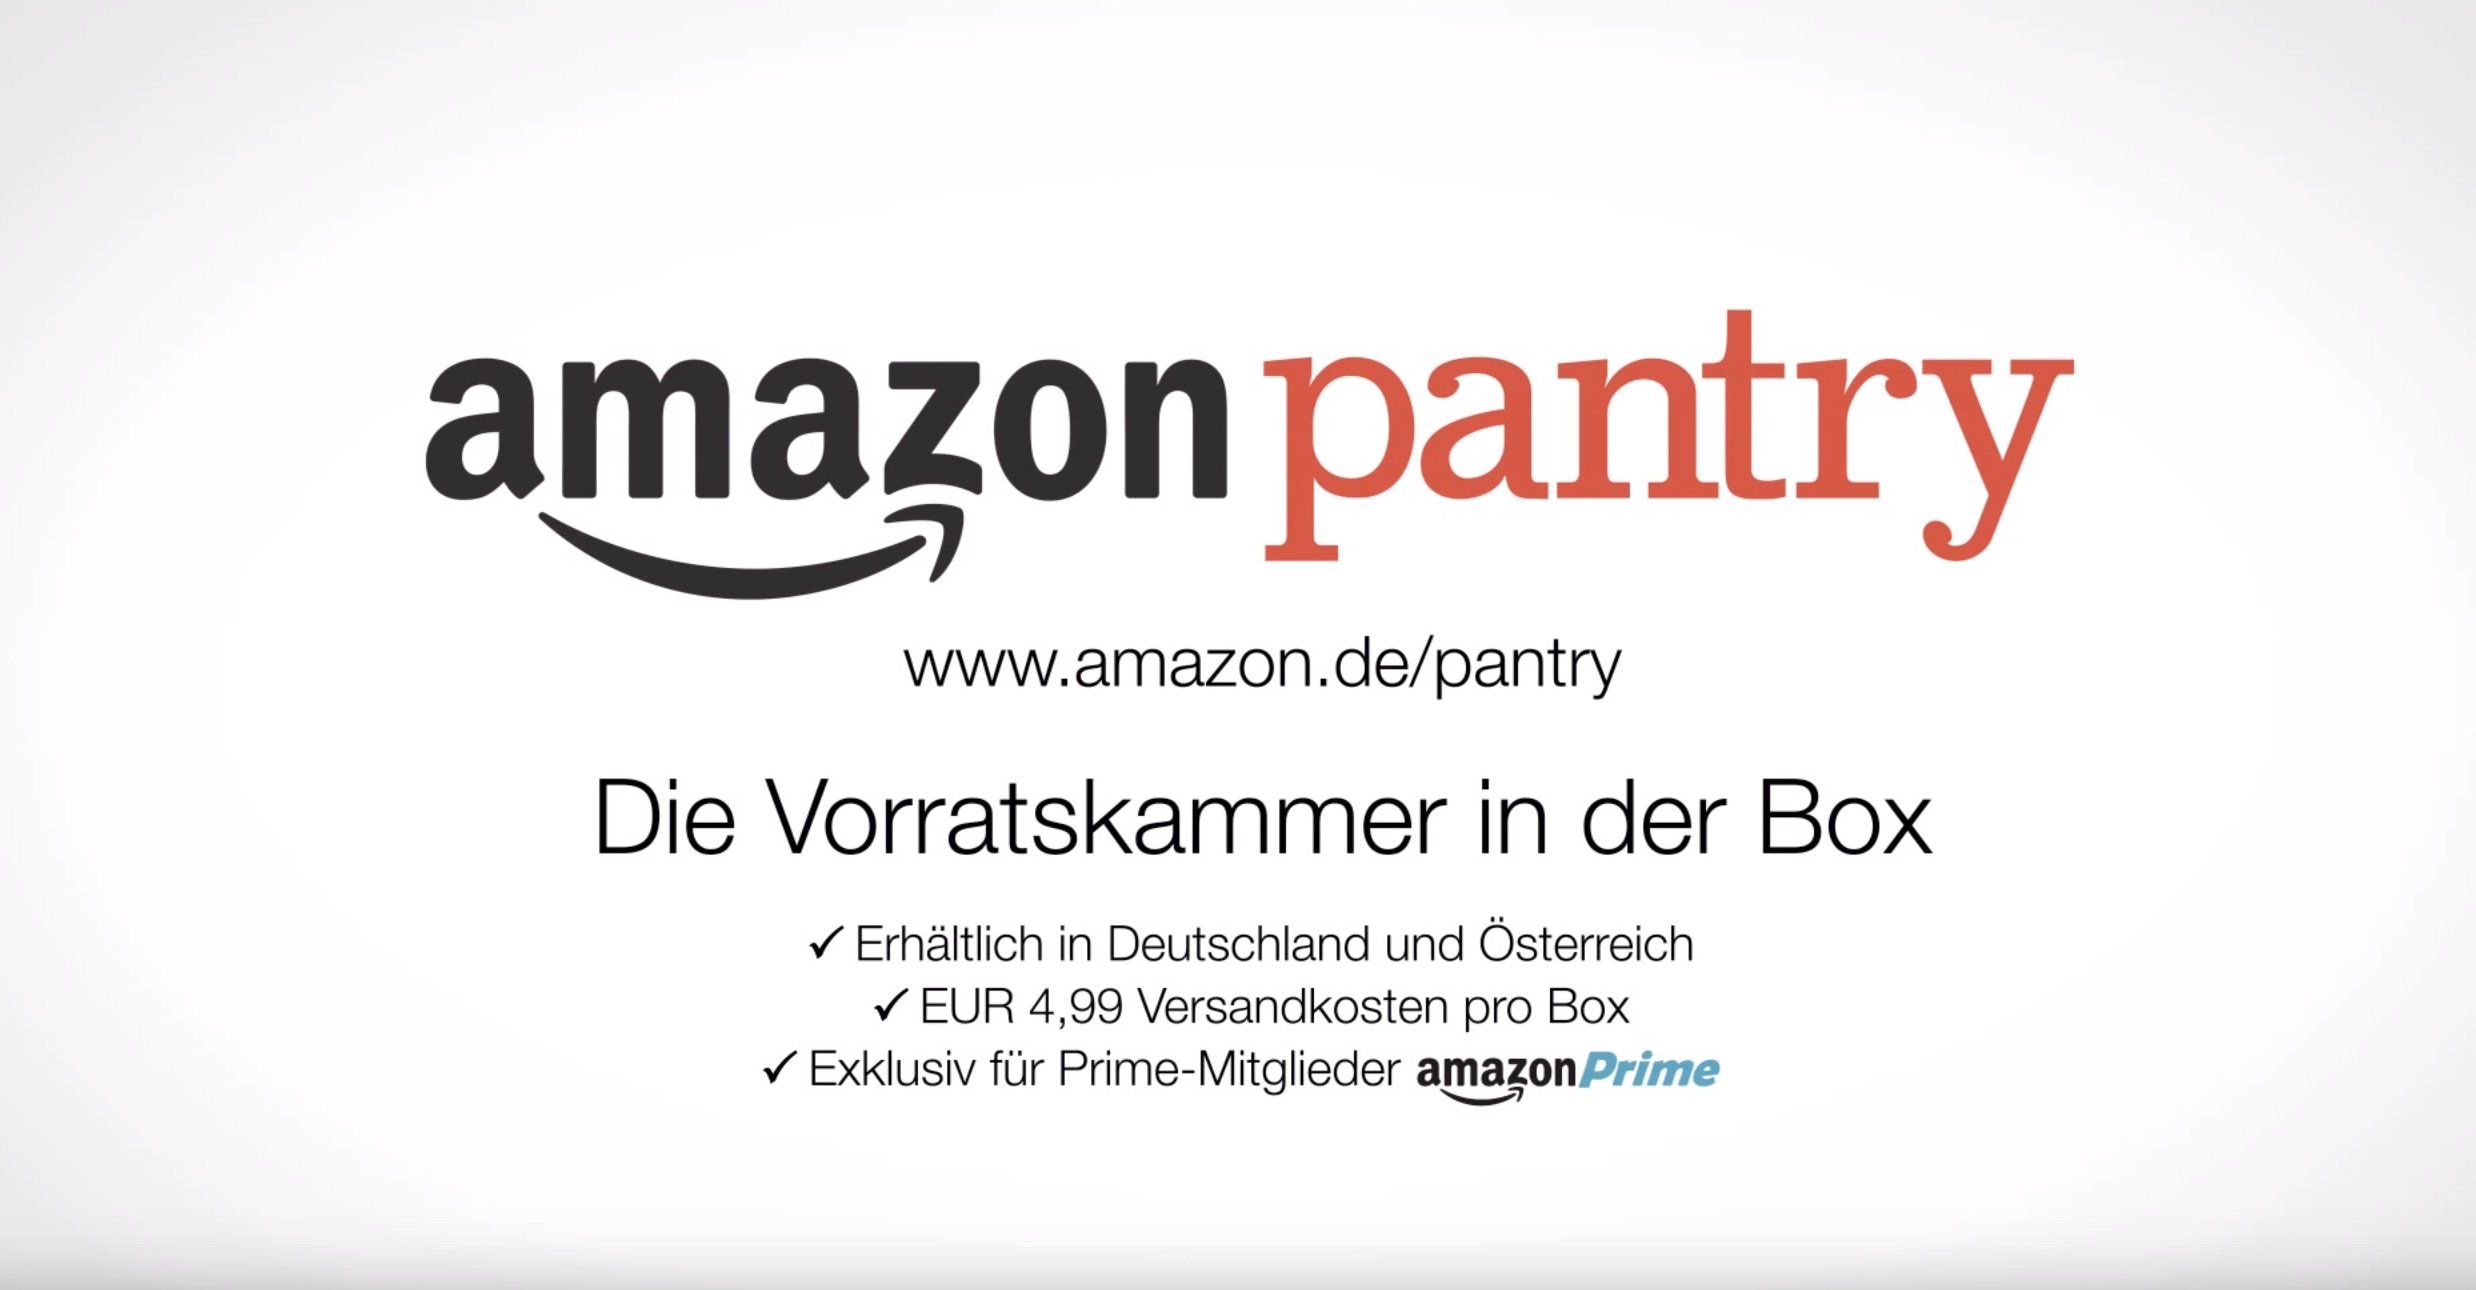 Amazon Pantry: Essen kaufen bei Amazon - die virtuelle Vorratskammer! 8